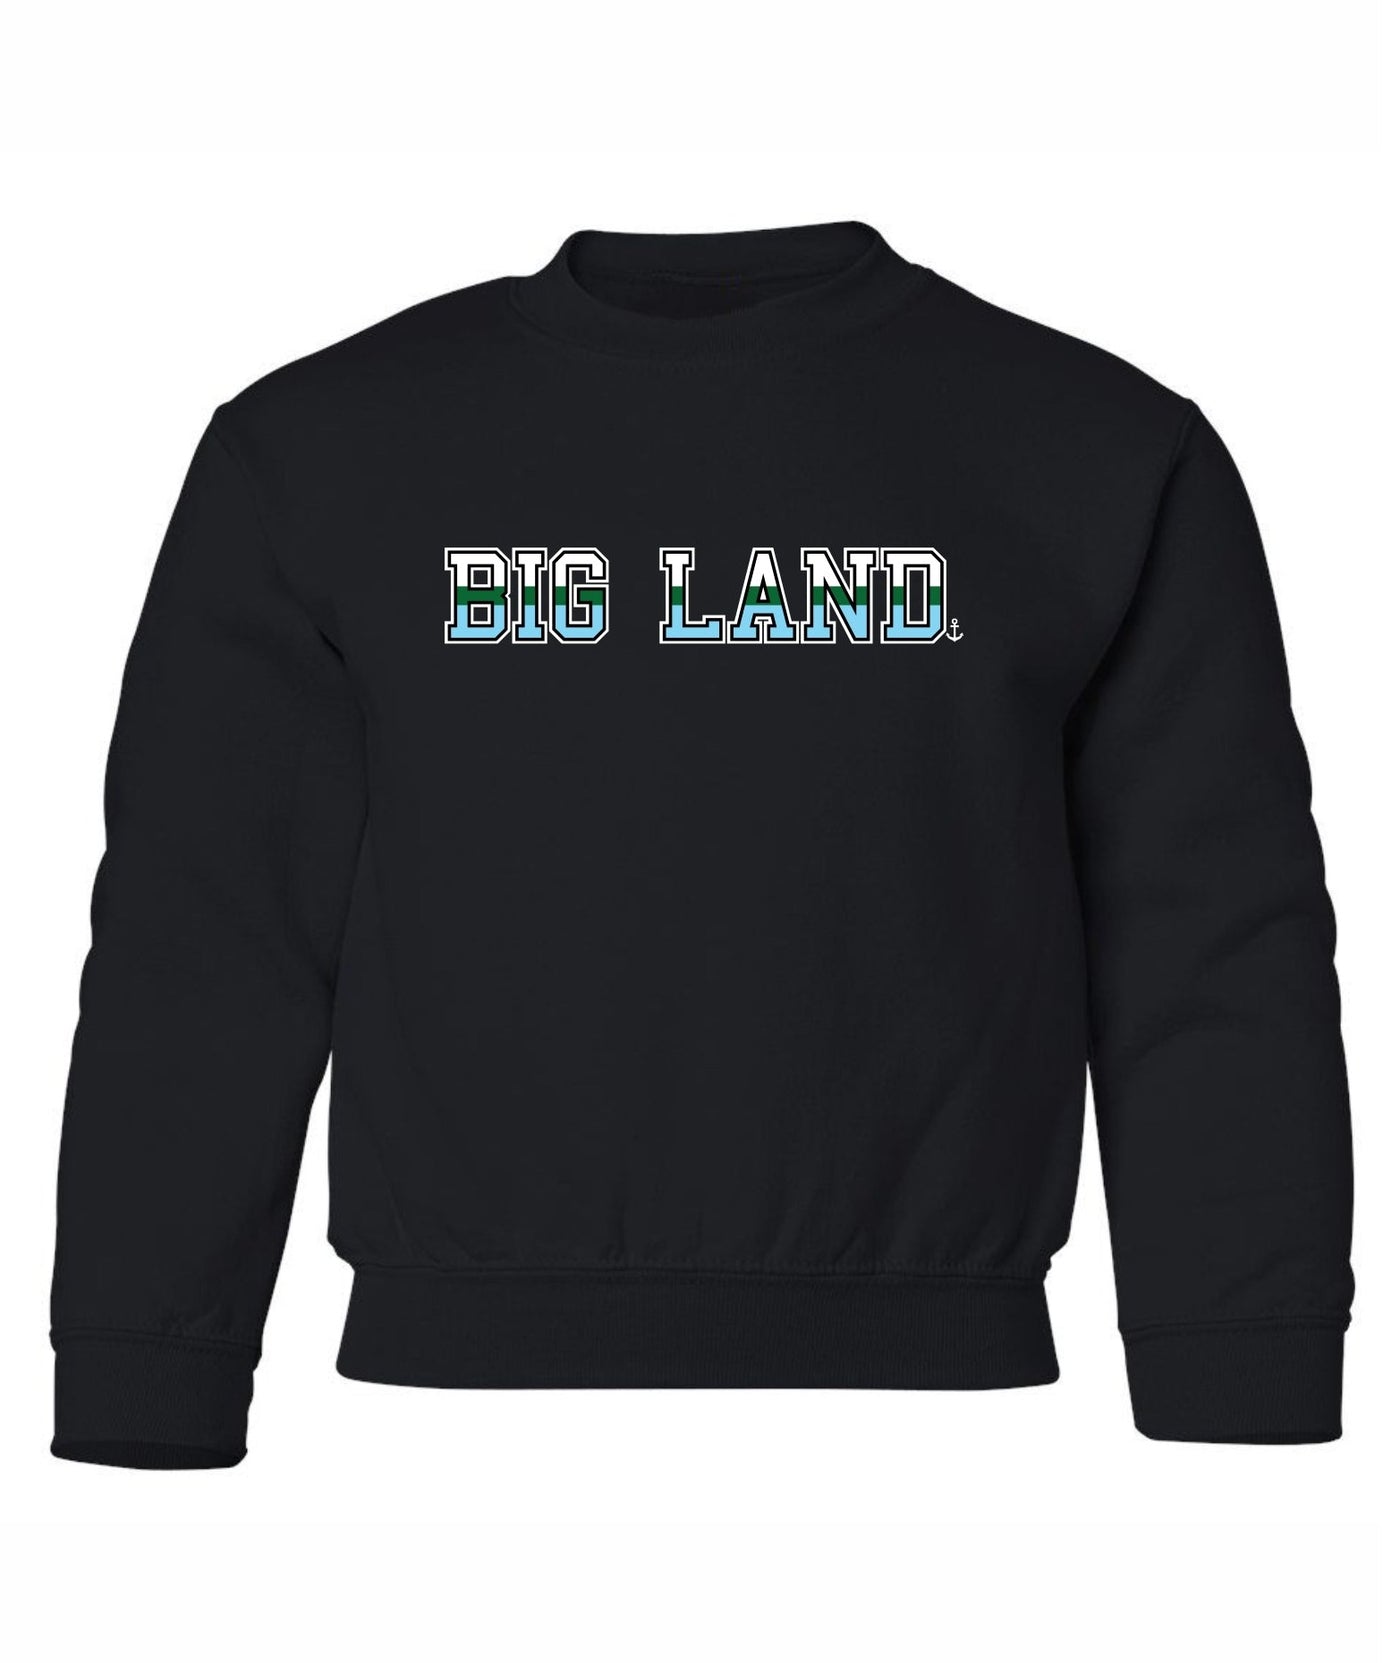 "Big Land" Toddler/Youth Crewneck Sweatshirt